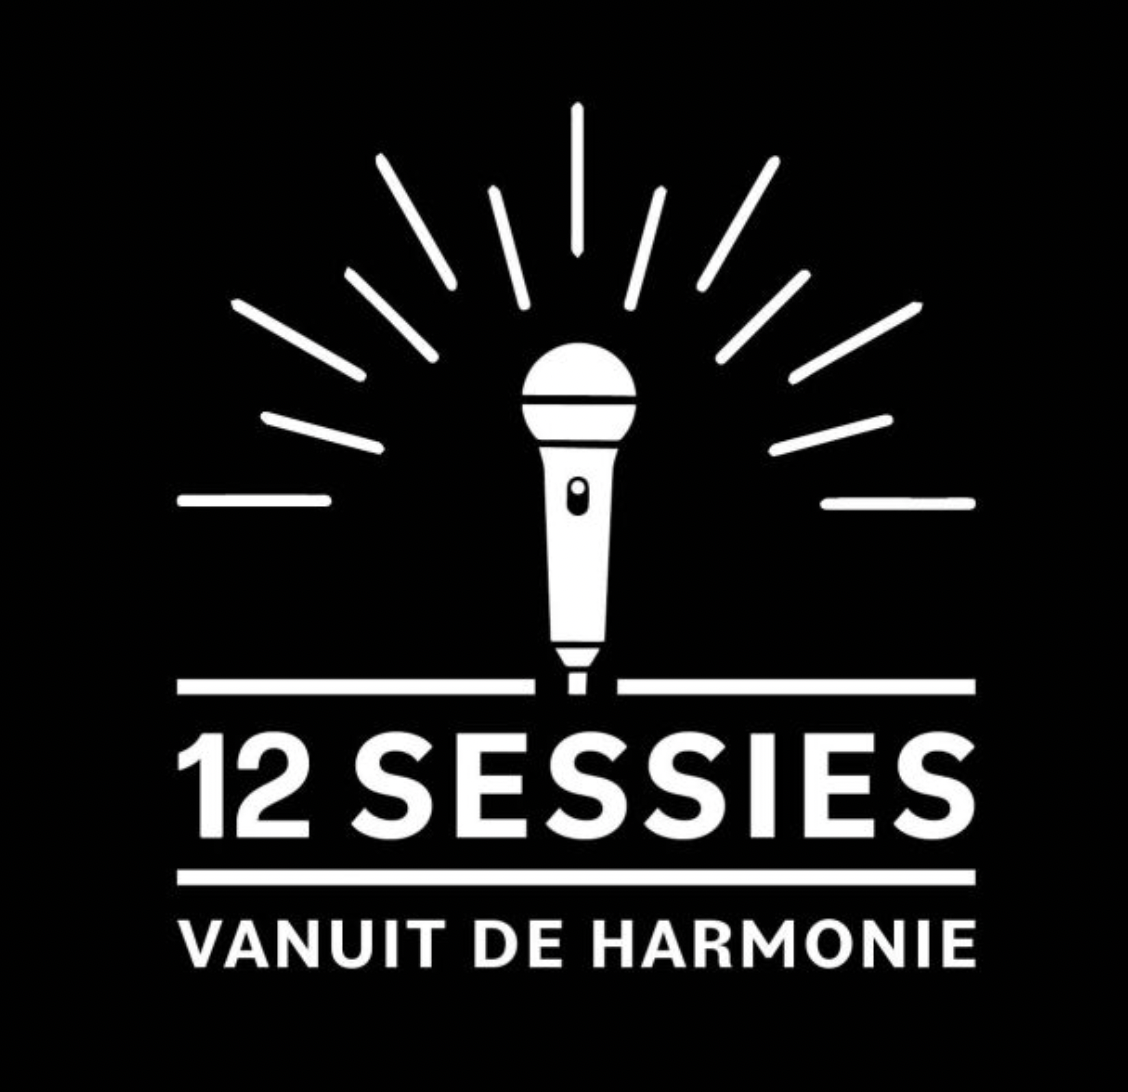 Theaters open, cadeau van De Harmonie!